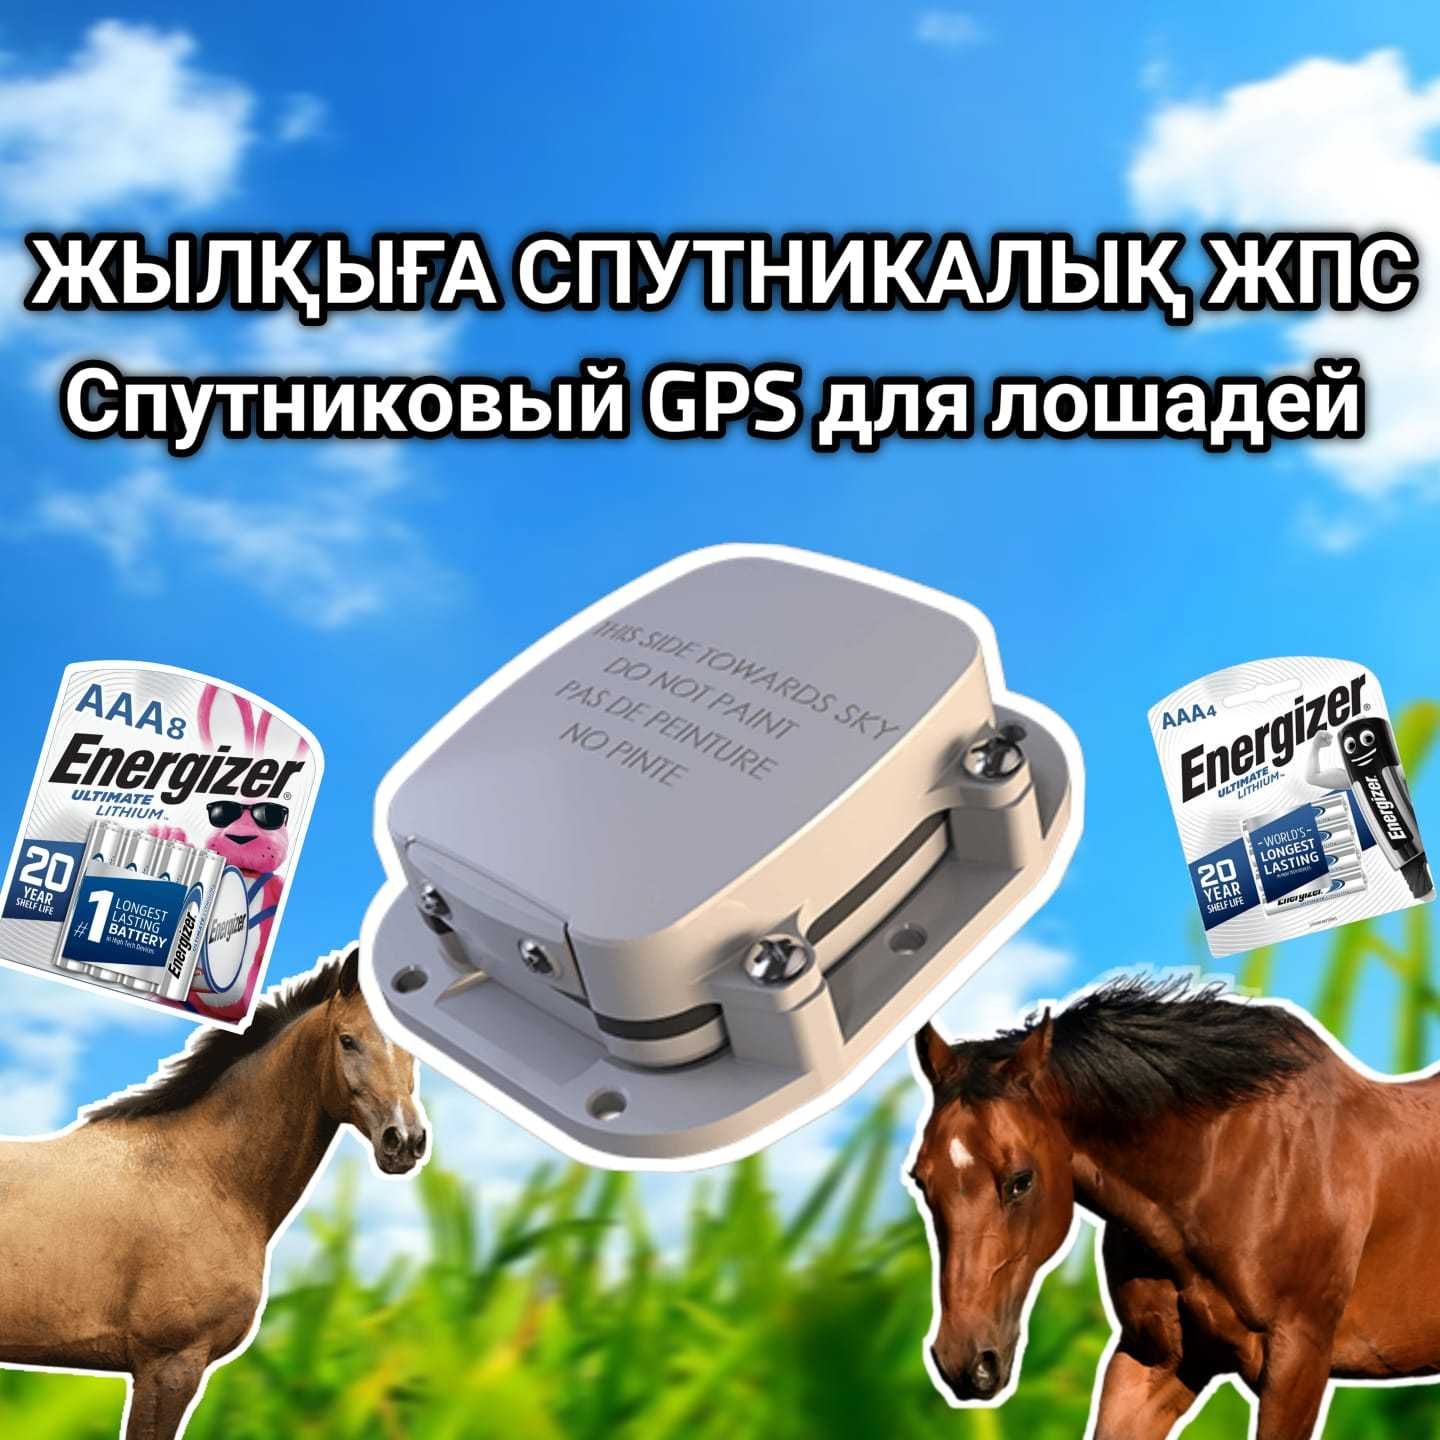 GPS трекер для животных малга жылкыга ЖПС / животных / мониторинг